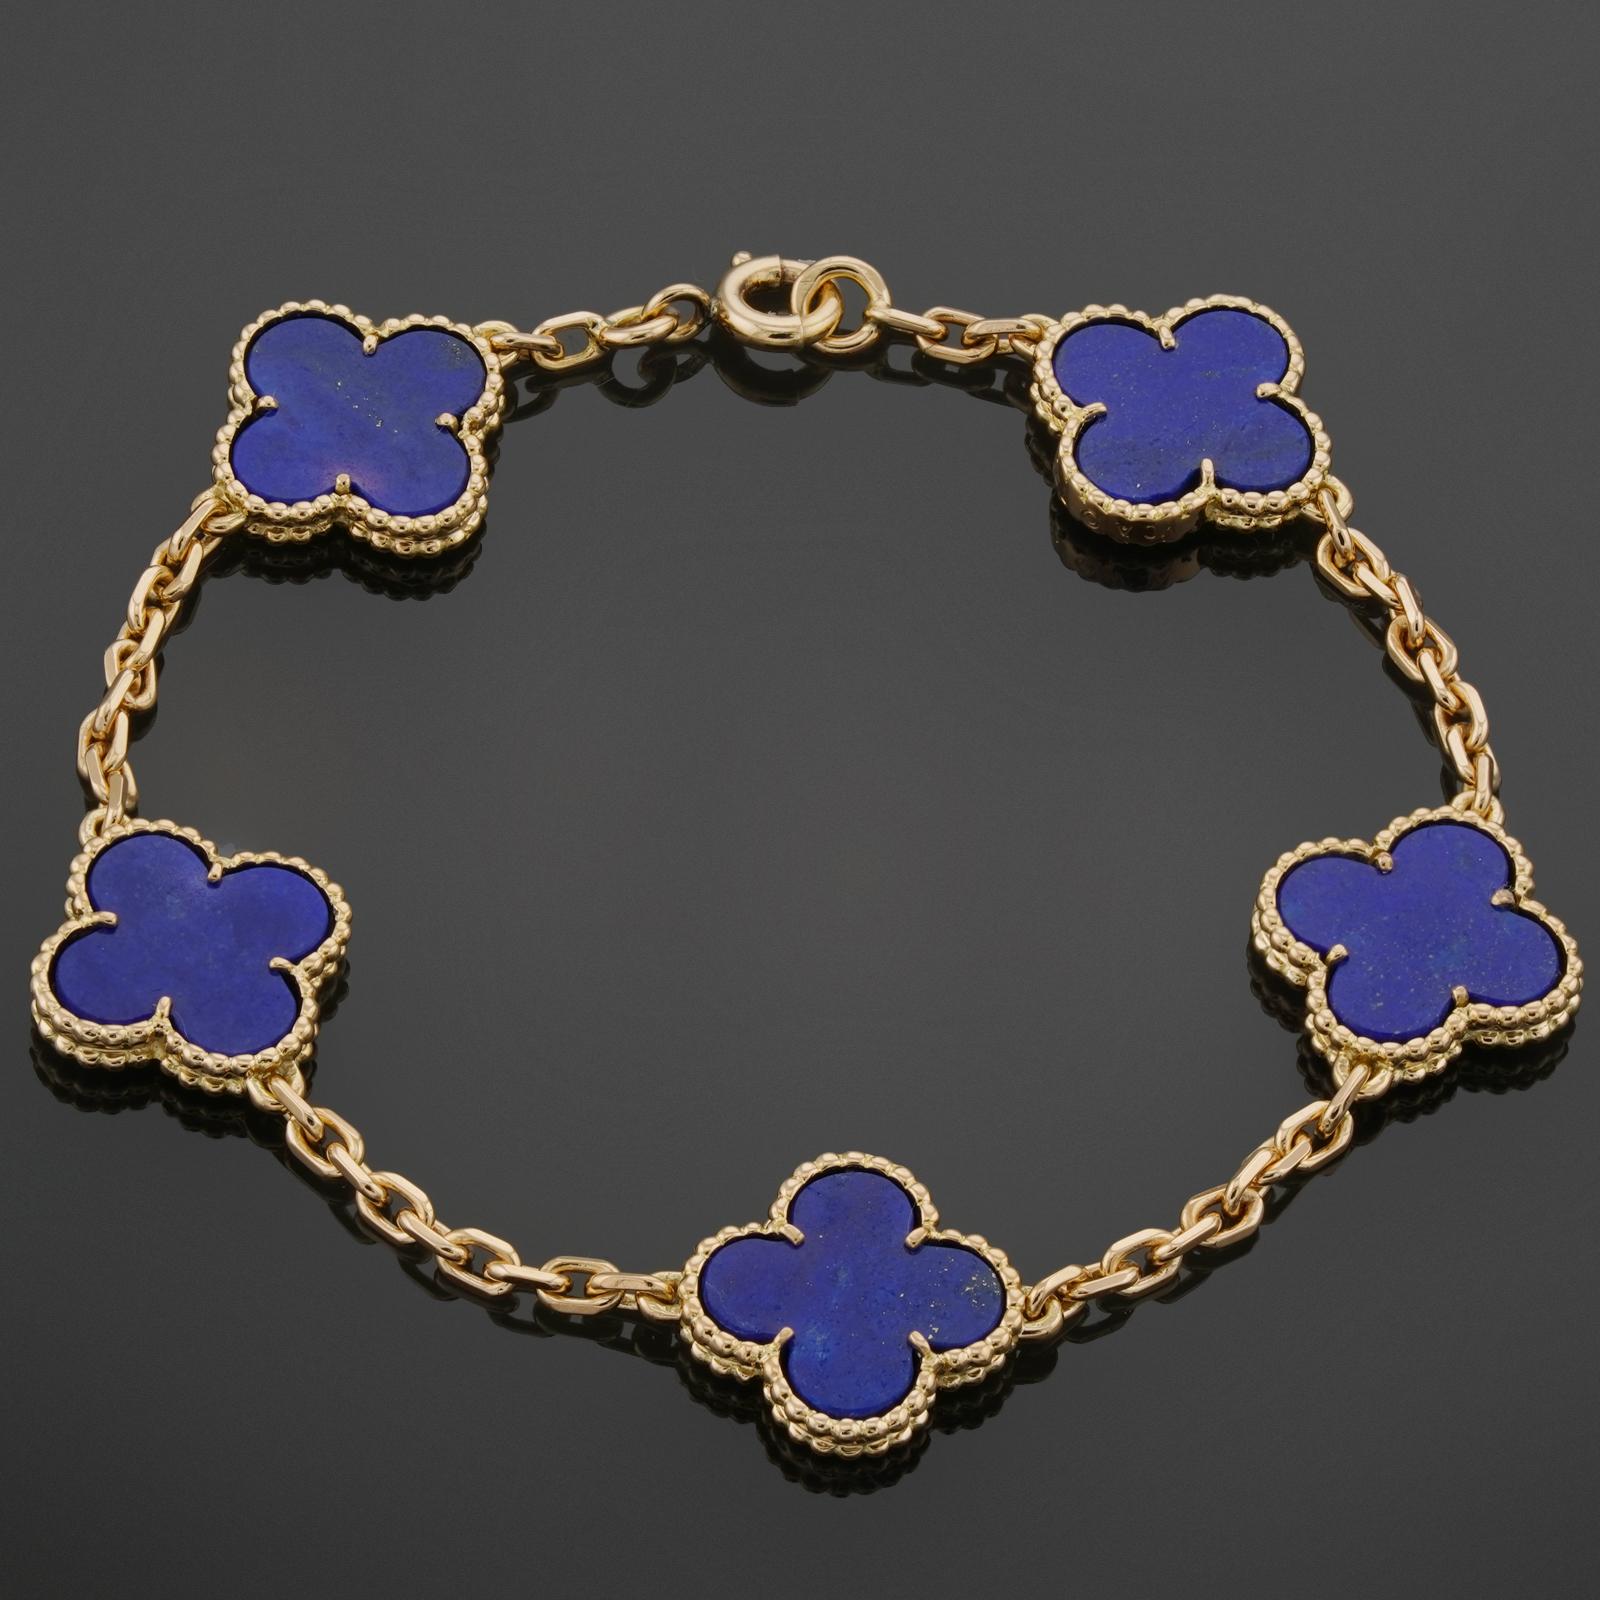 Ce rare bracelet Van Cleef & Arpels de la collection classique Vintage Alhambra est réalisé en or jaune 18 carats et présente 5 motifs de trèfle porte-bonheur incrustés de lapiz-lazuli bleu dans des montures de perles rondes. Fabriqué en France dans